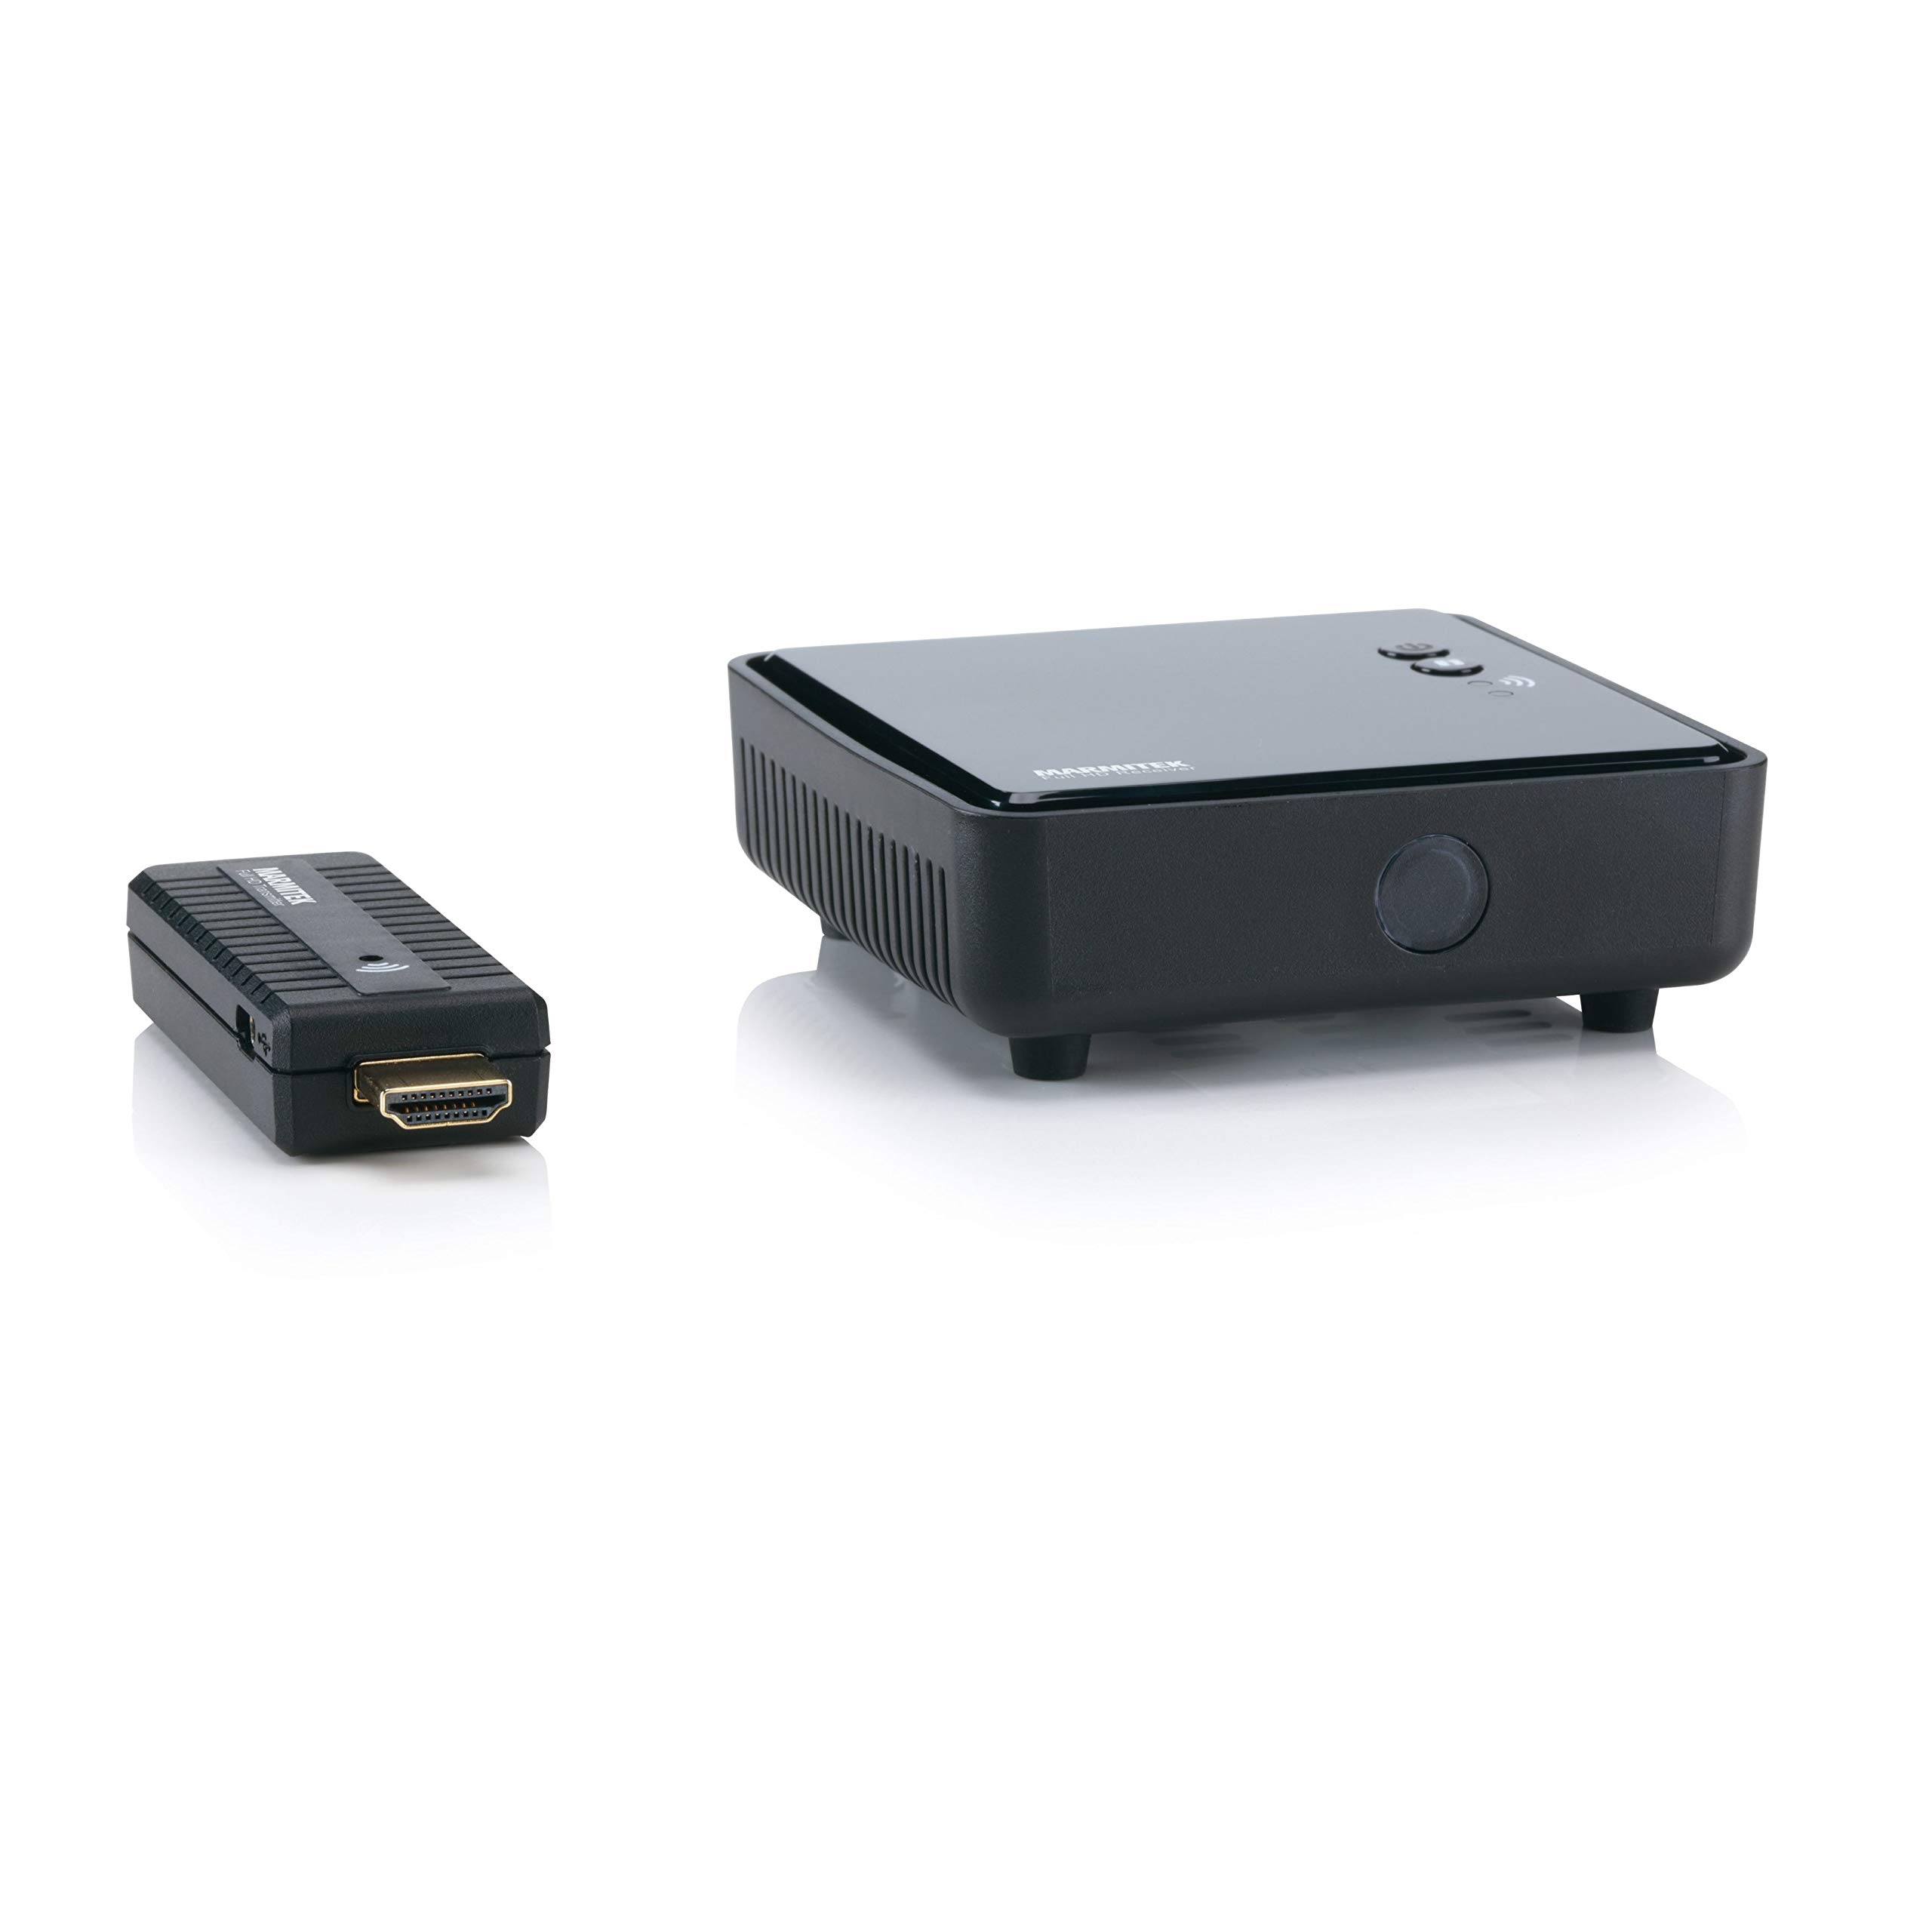 Wireless HDMI Extender - Marmitek GigaView 811 - Laptop drahtlos auf Fernseher oder Projektor streamen - HDMI Übertragung ohne Komprimierung und Daher ohne Verzögerung - Full HD - 1080p - Plug & Play